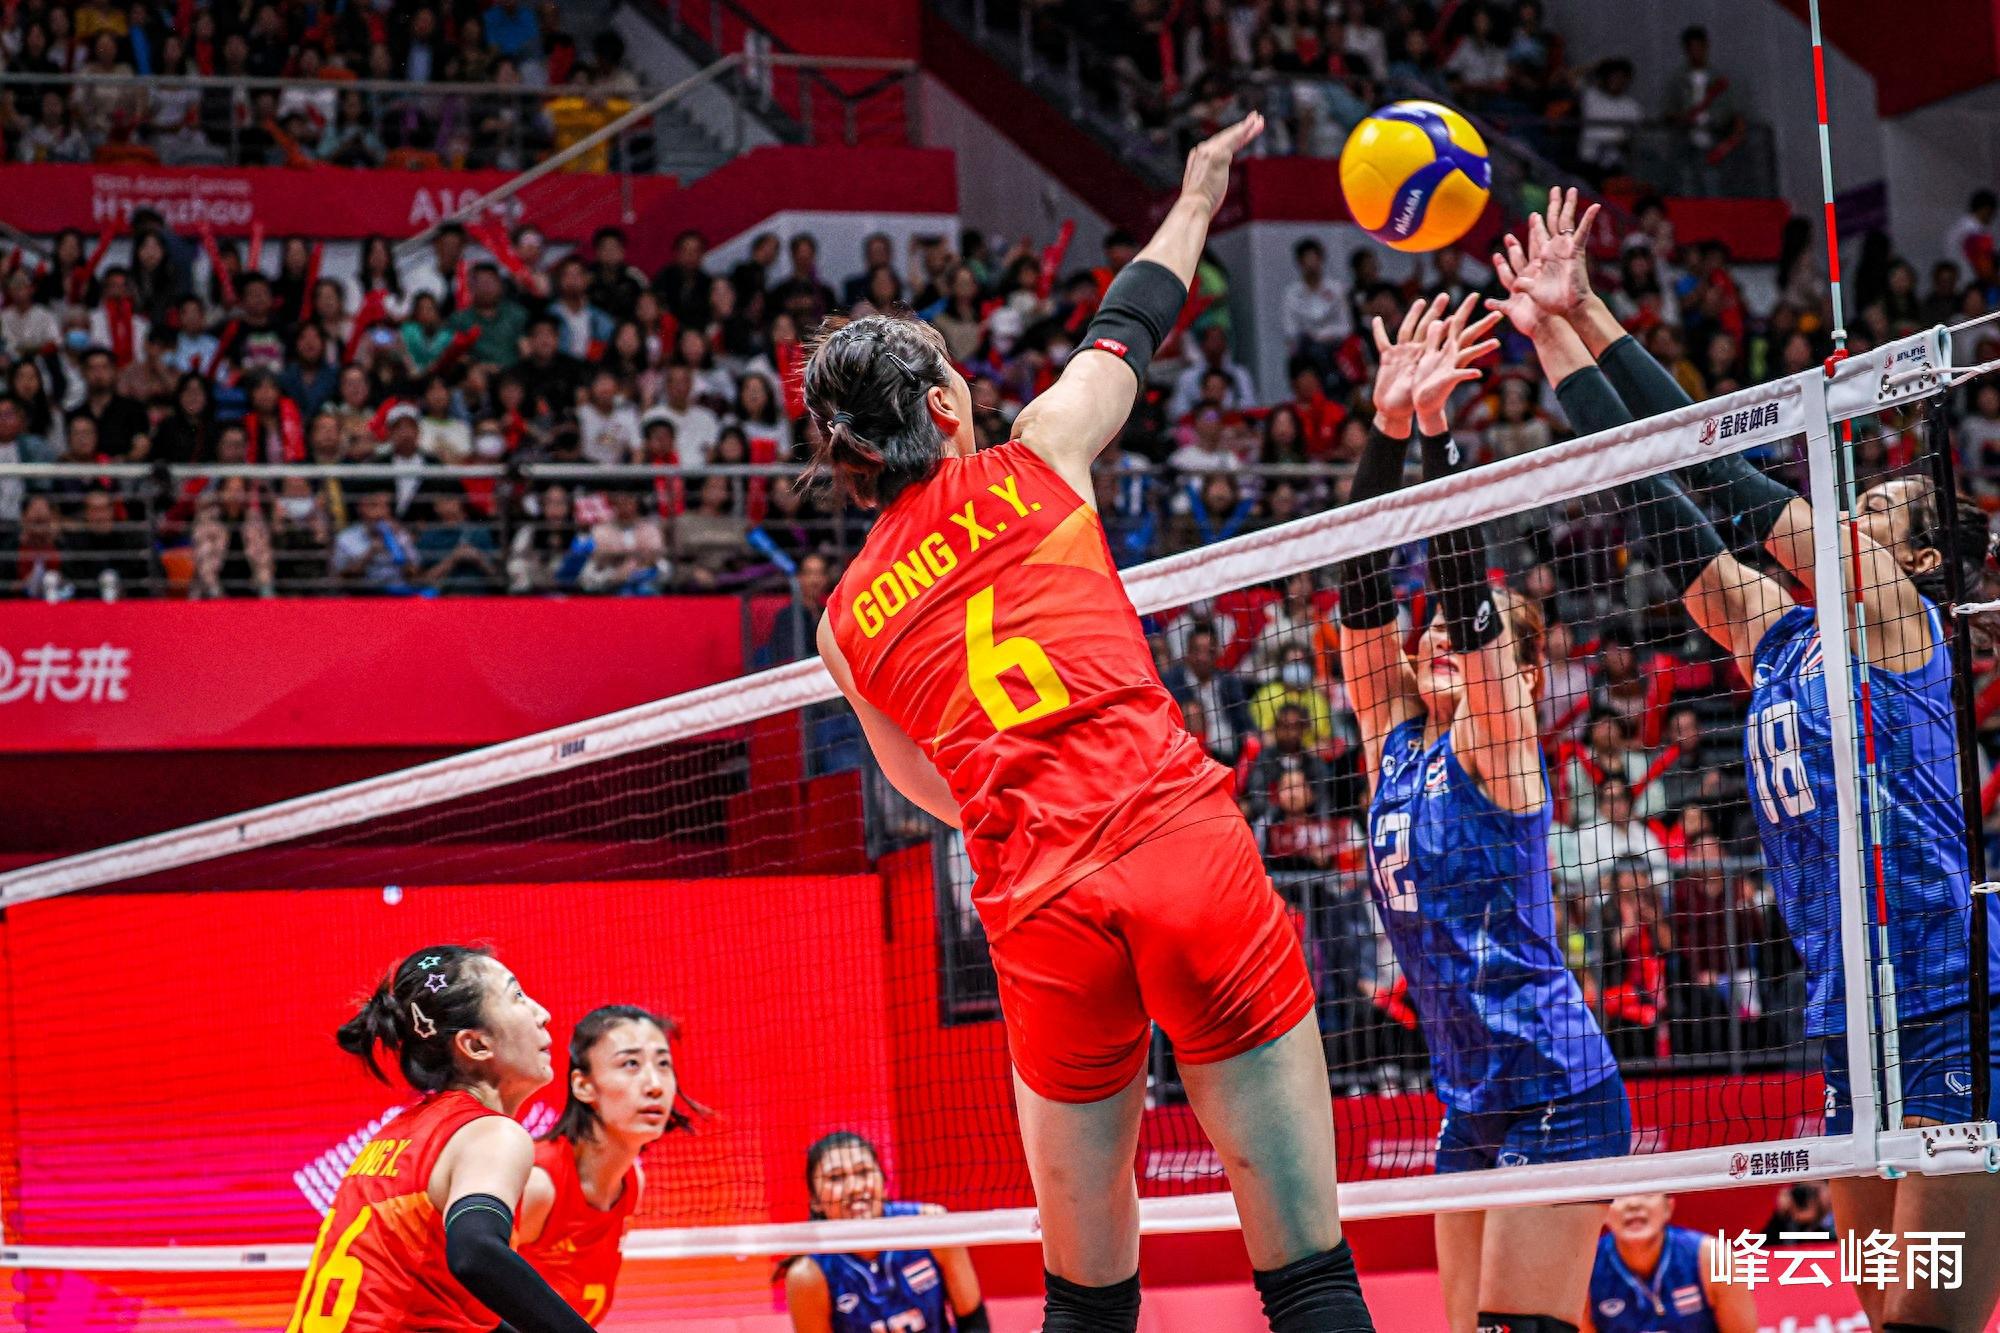 中国女排走出奥运资格赛失利的阴影，斩获队史第9个亚运会冠军